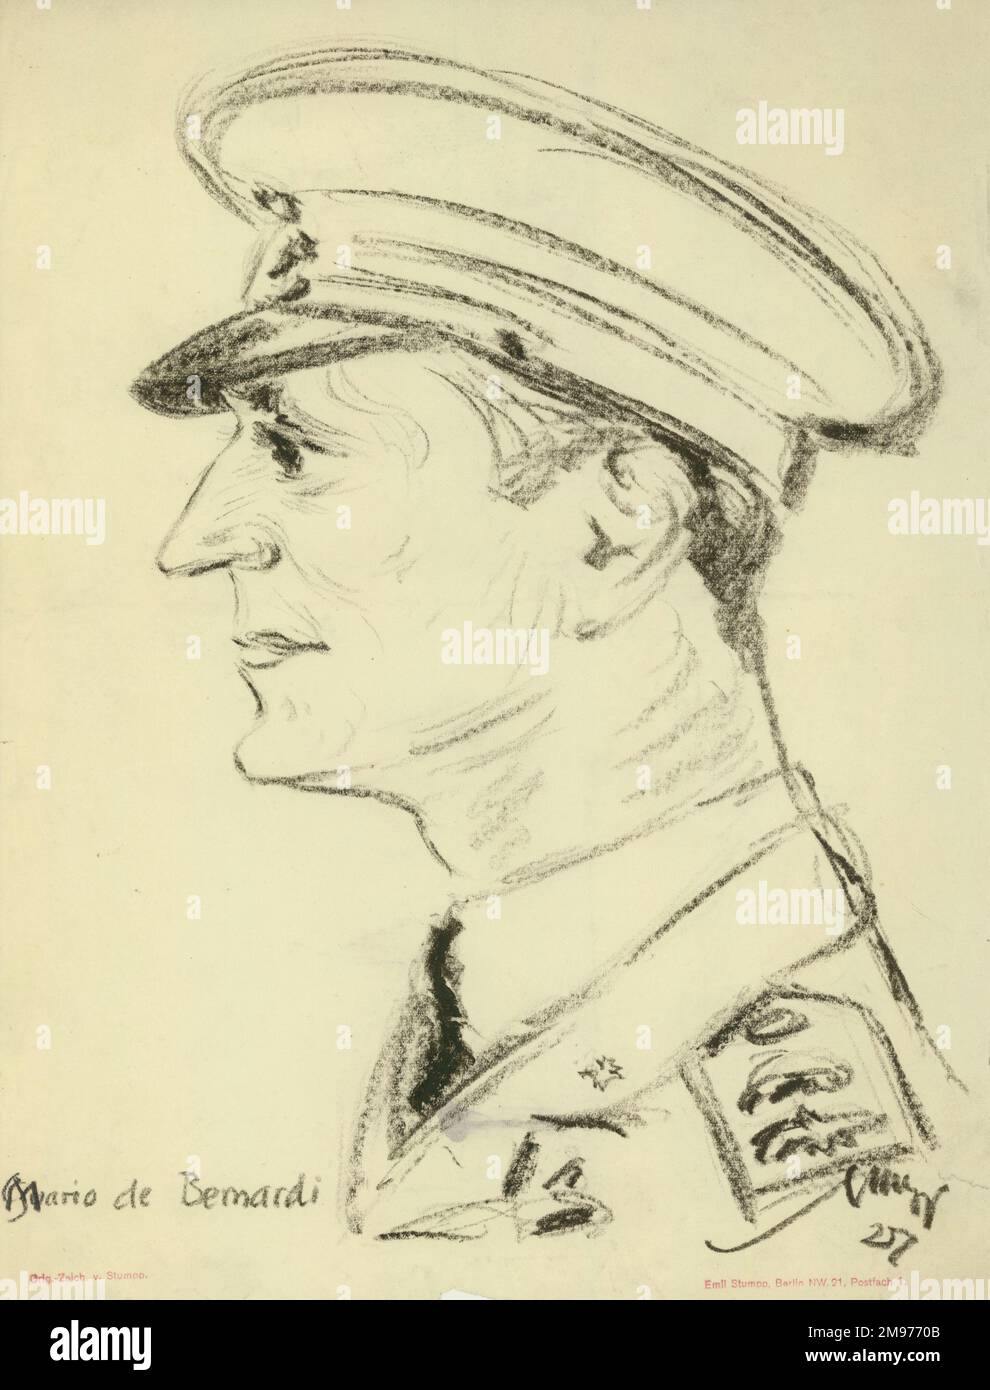 Il maggiore Mario de Bernardi disegnato da Emil Stumpp durante la gara del Trofeo Schneider 1927 a Venezia. Foto Stock